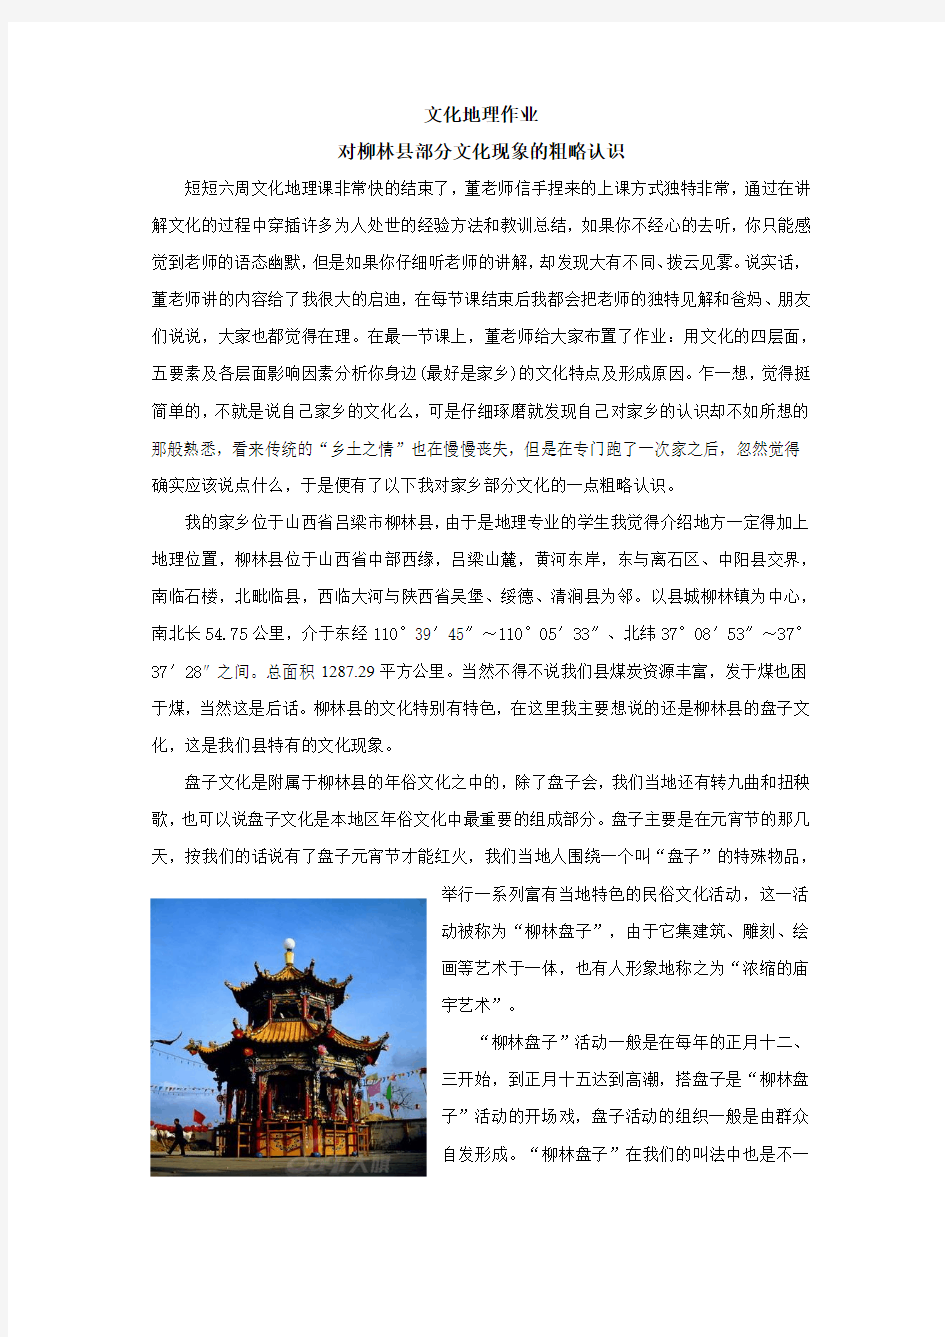 文化地理 对柳林县盘子文化的认识